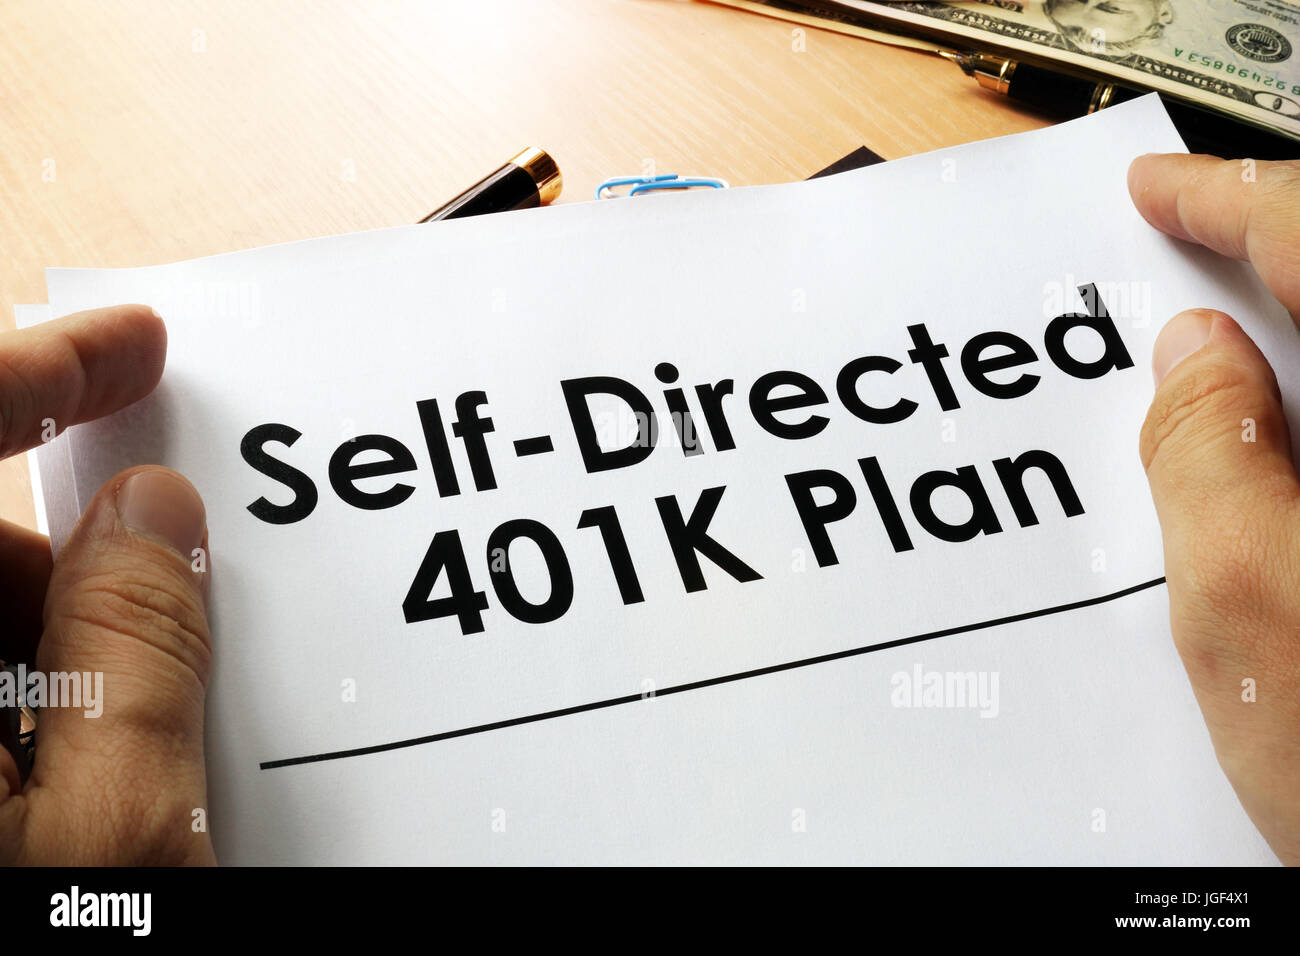 Autodirigido plan 401k escrito en un papel. Foto de stock